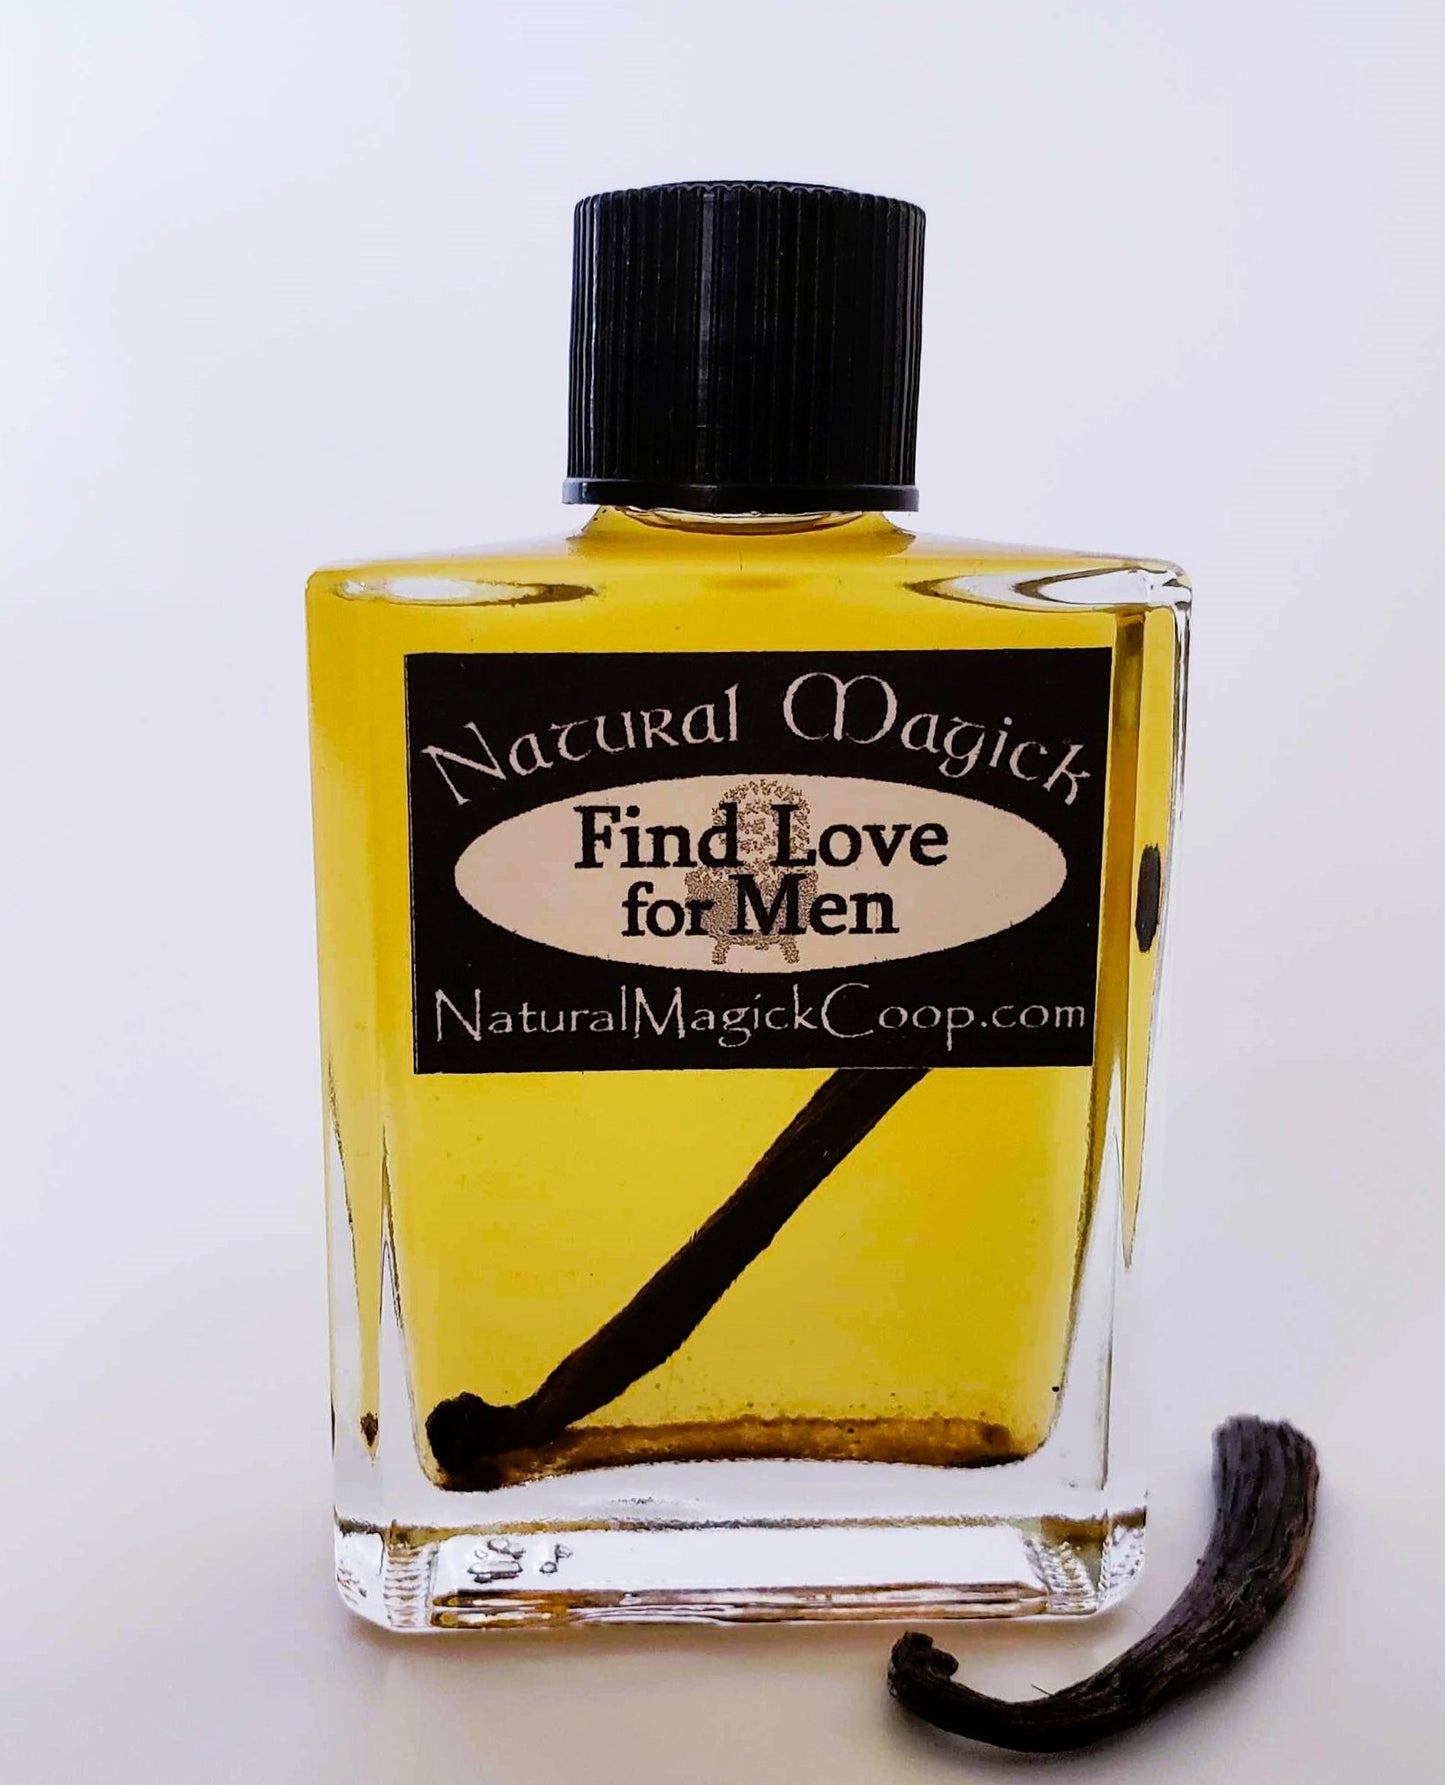 Find Love for Men oil